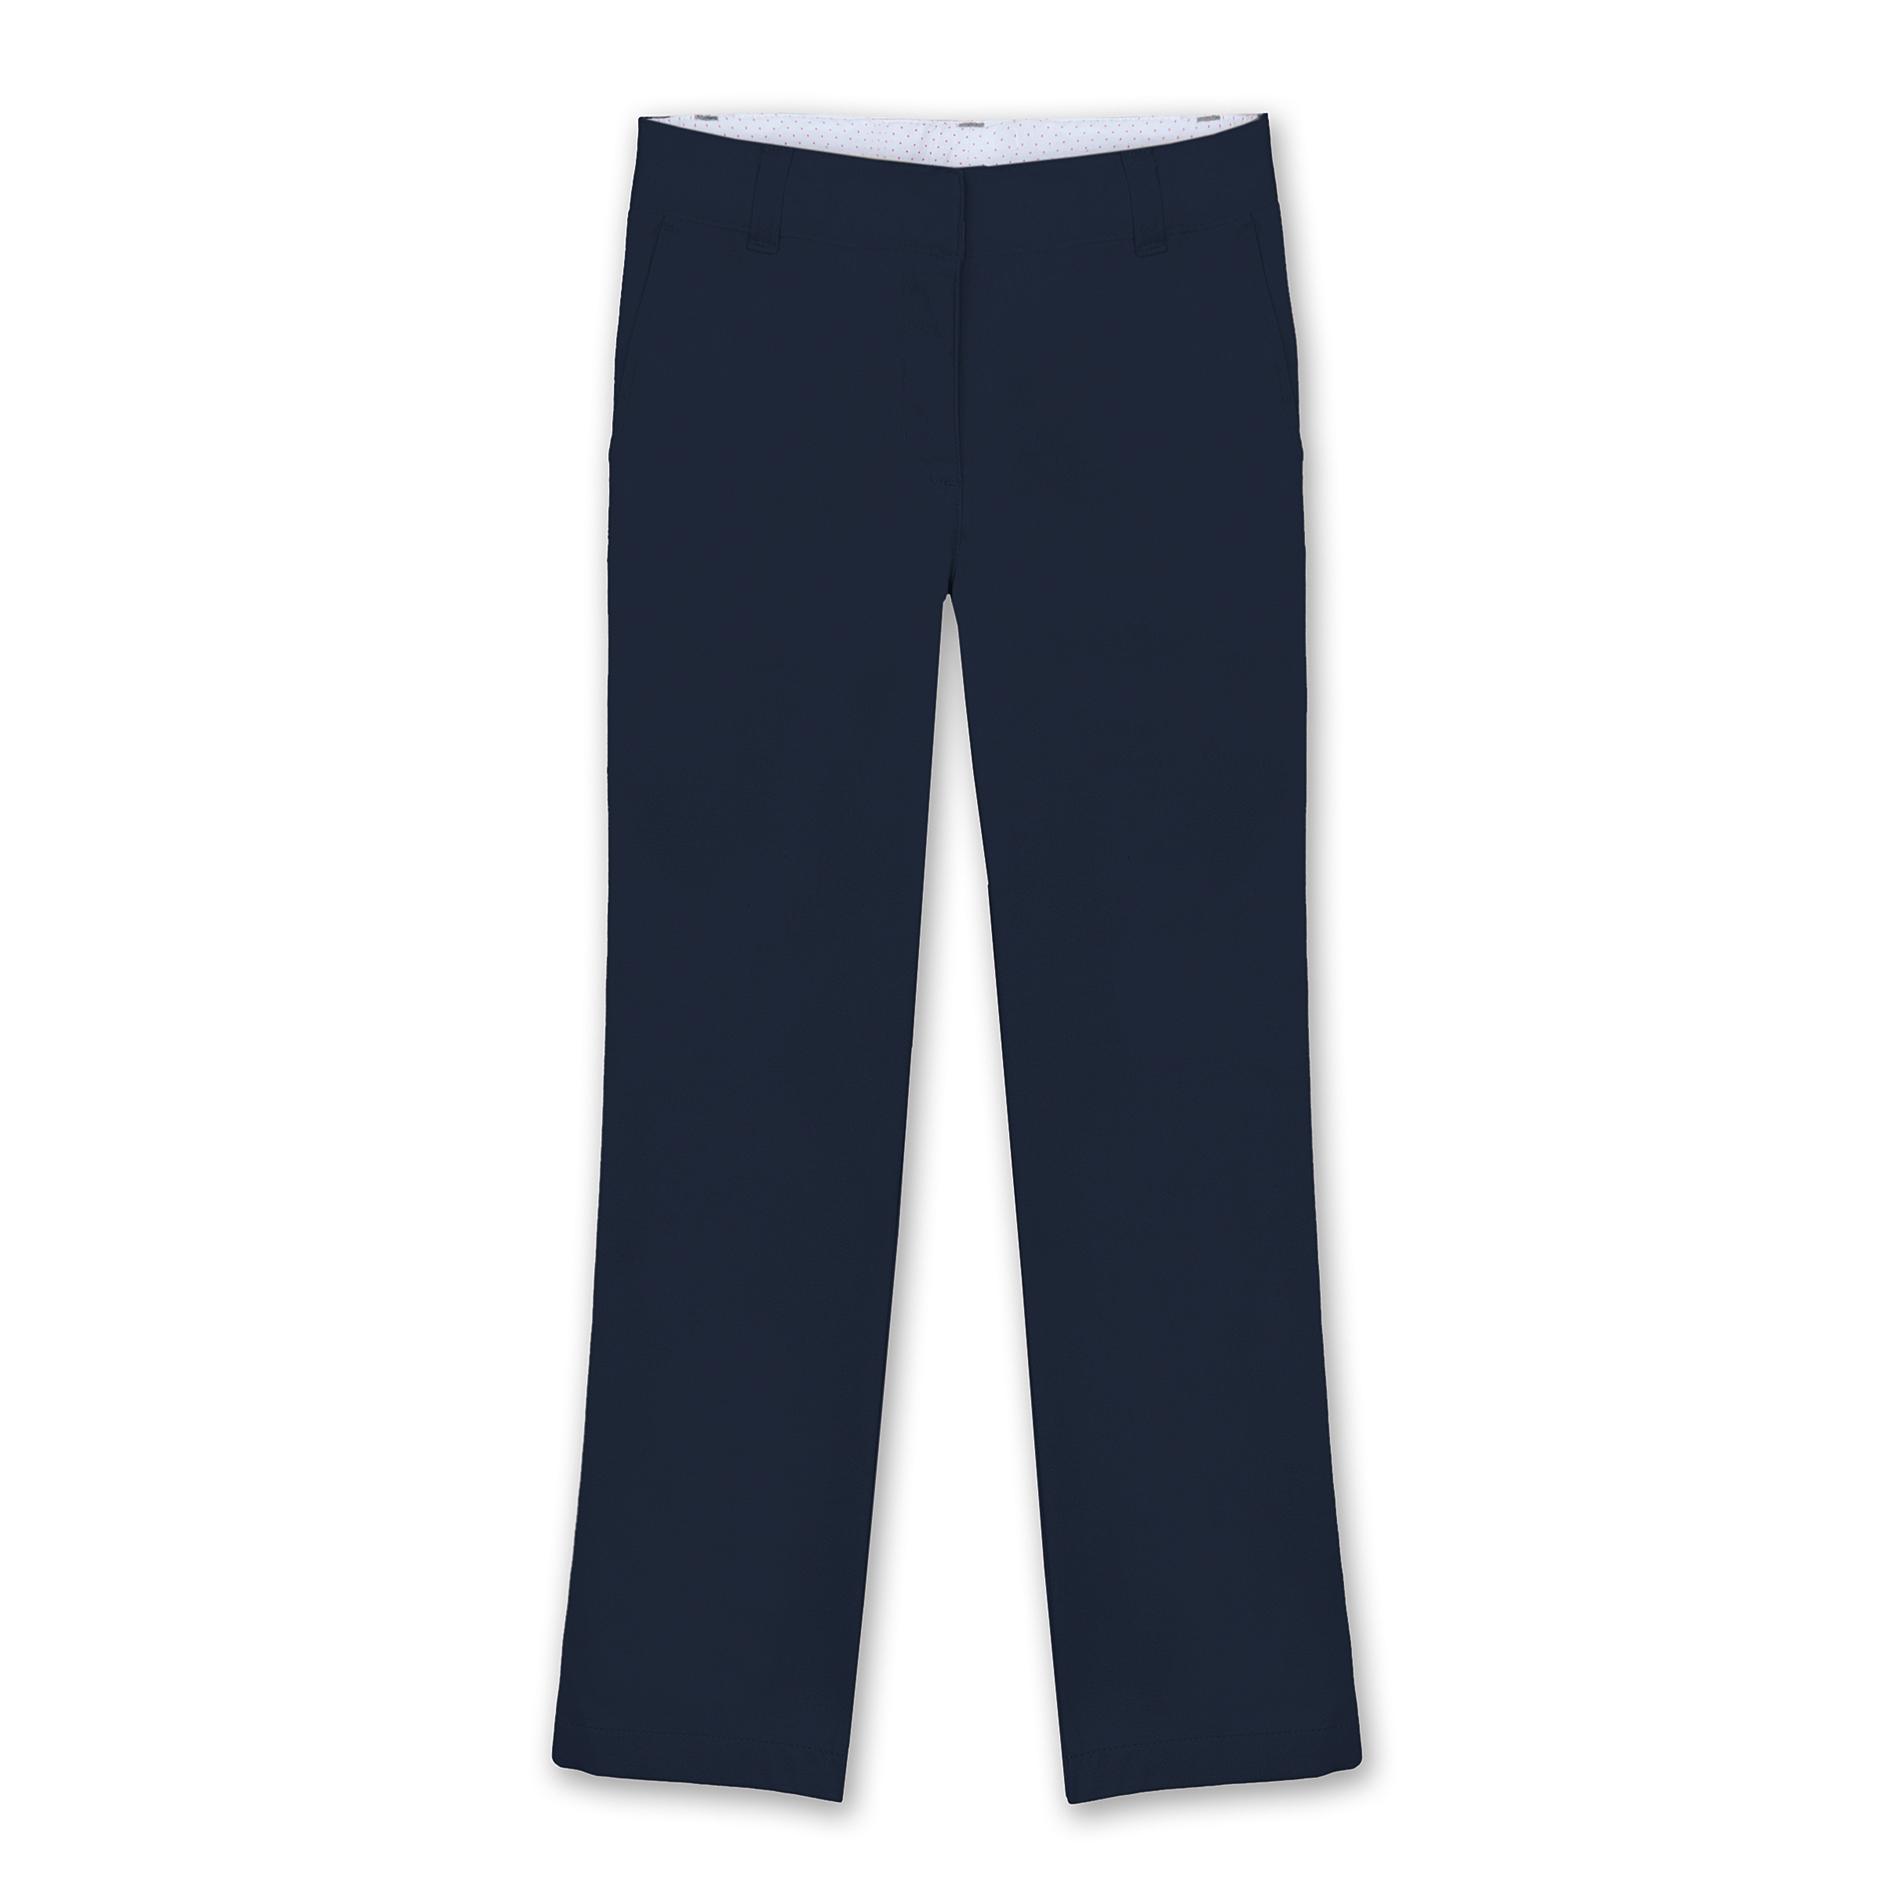 Dockers Girl's Uniform Pants - Flat Front - Navy